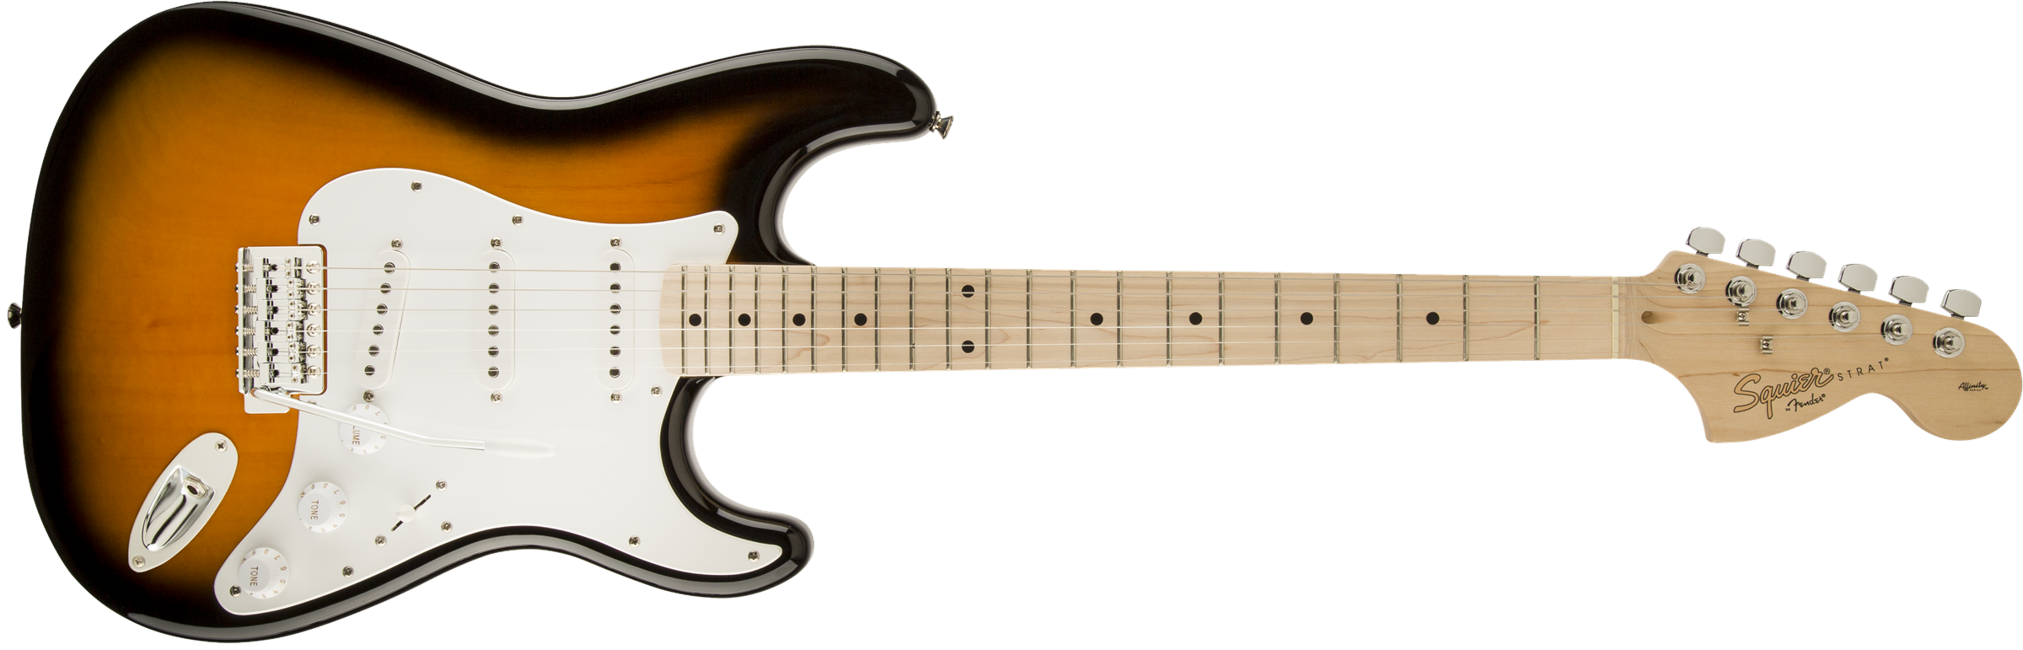 Squier By Fender - Affinity Stratocaster - Elektrisk Guitar (2-Color Sunburst)